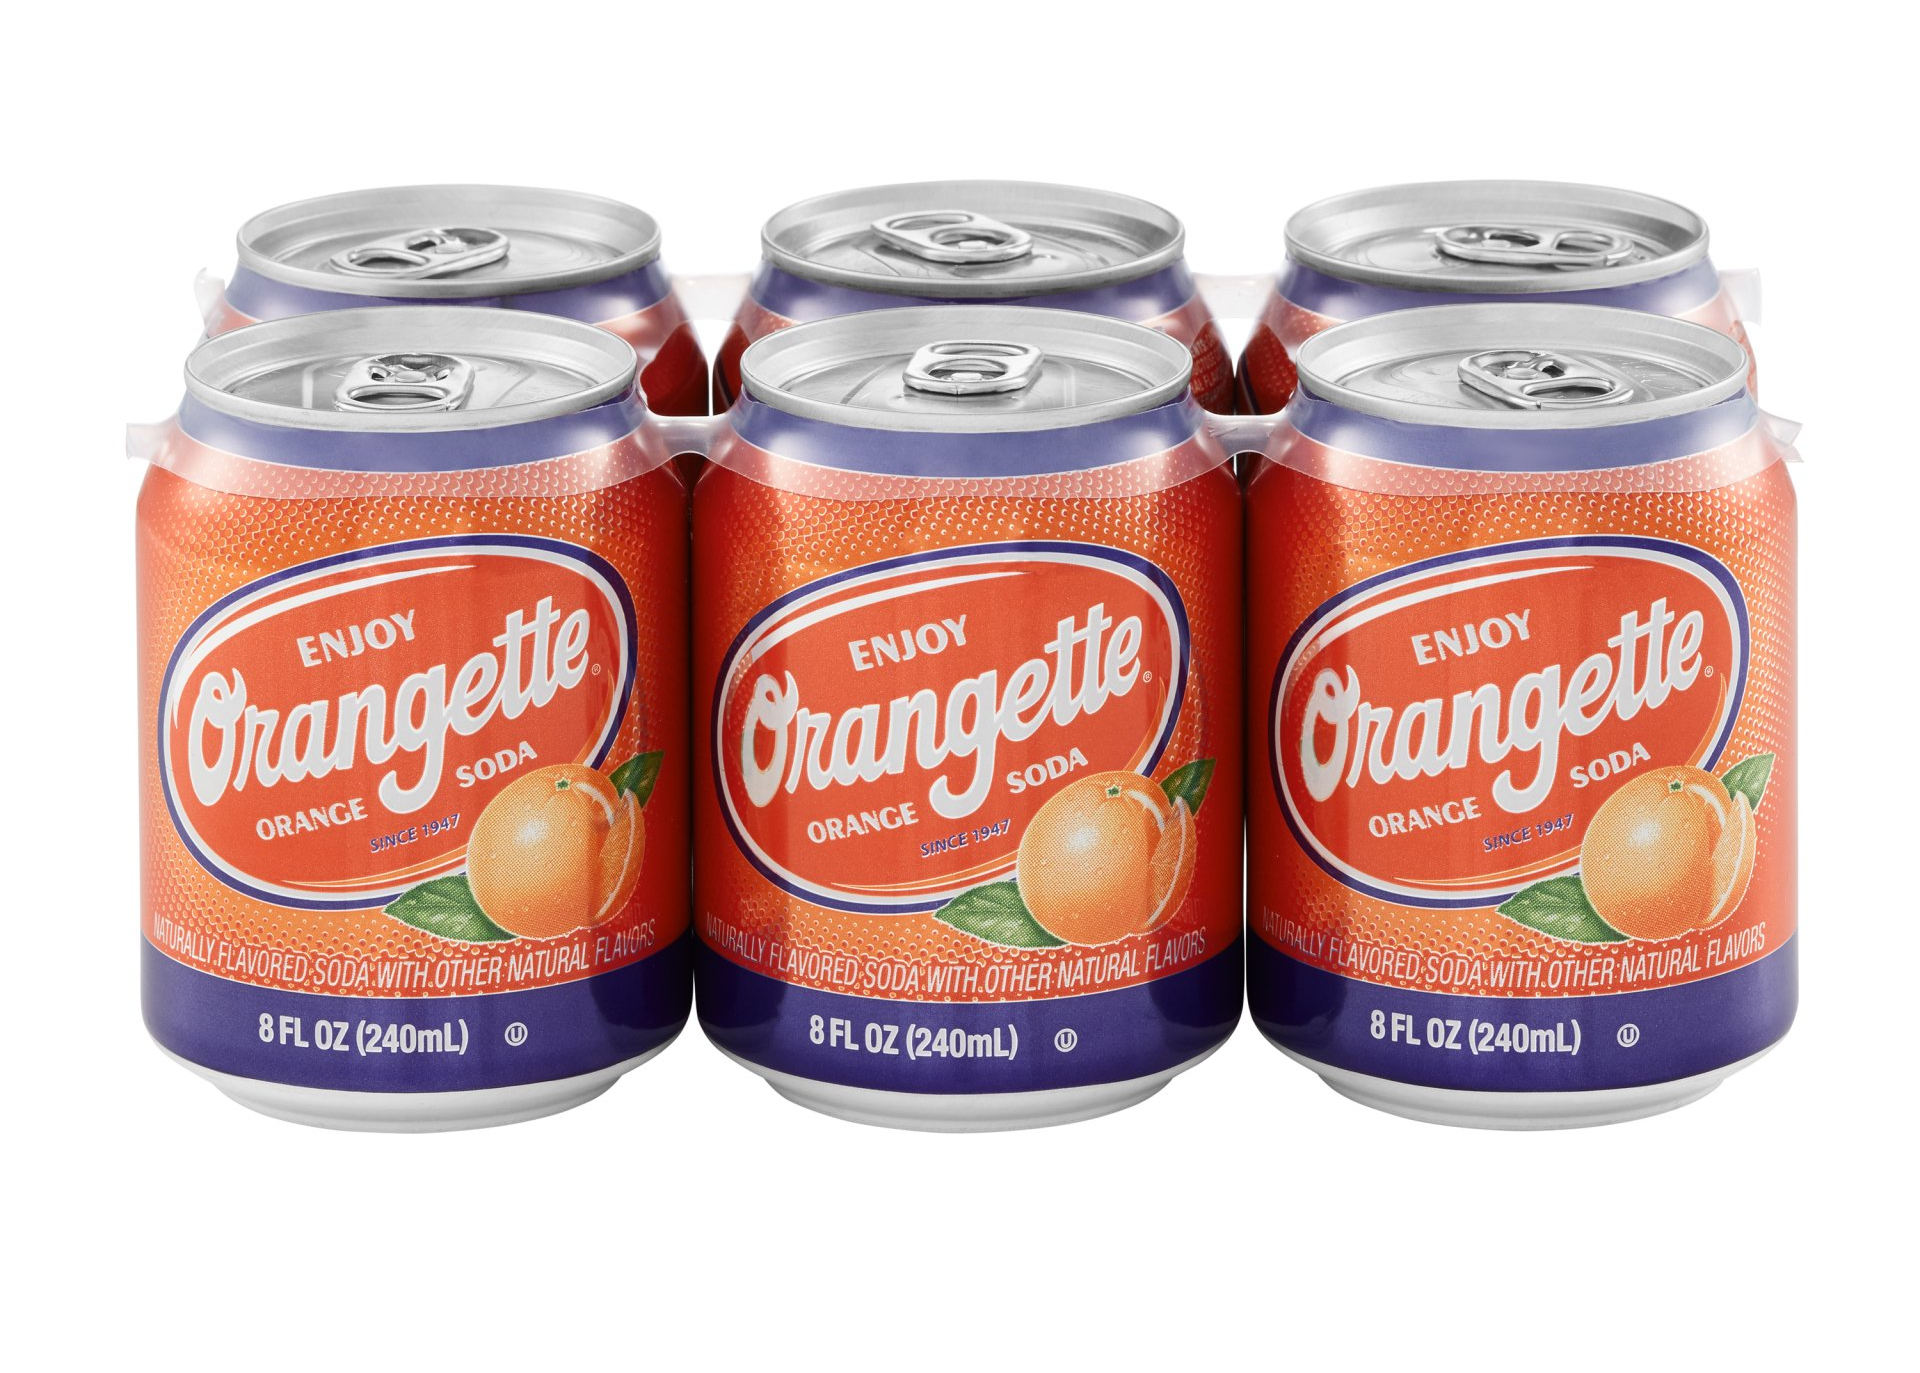 photo of orange soda